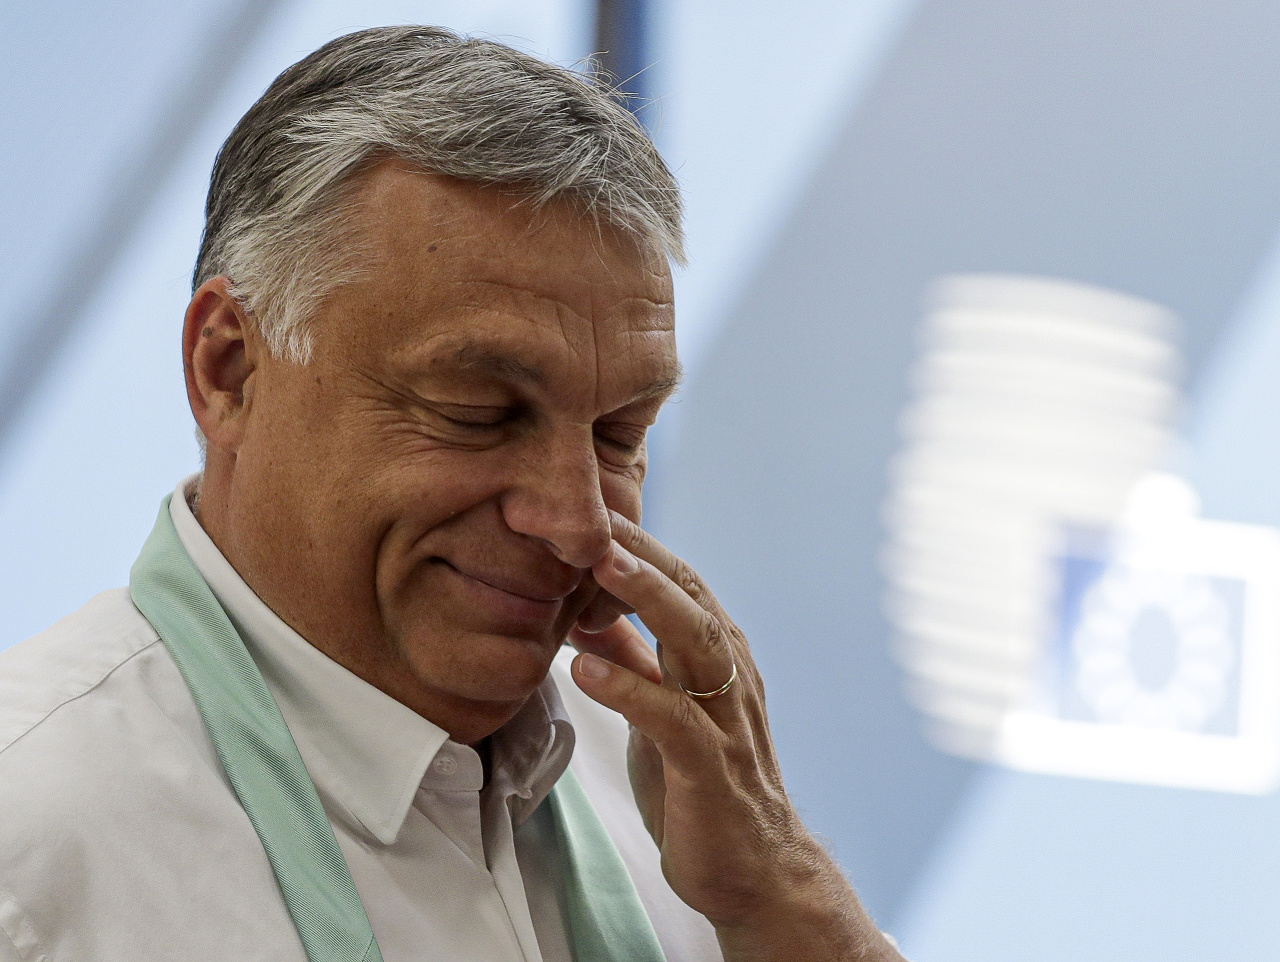 Predseda maďarskej vlády Viktor Orbán